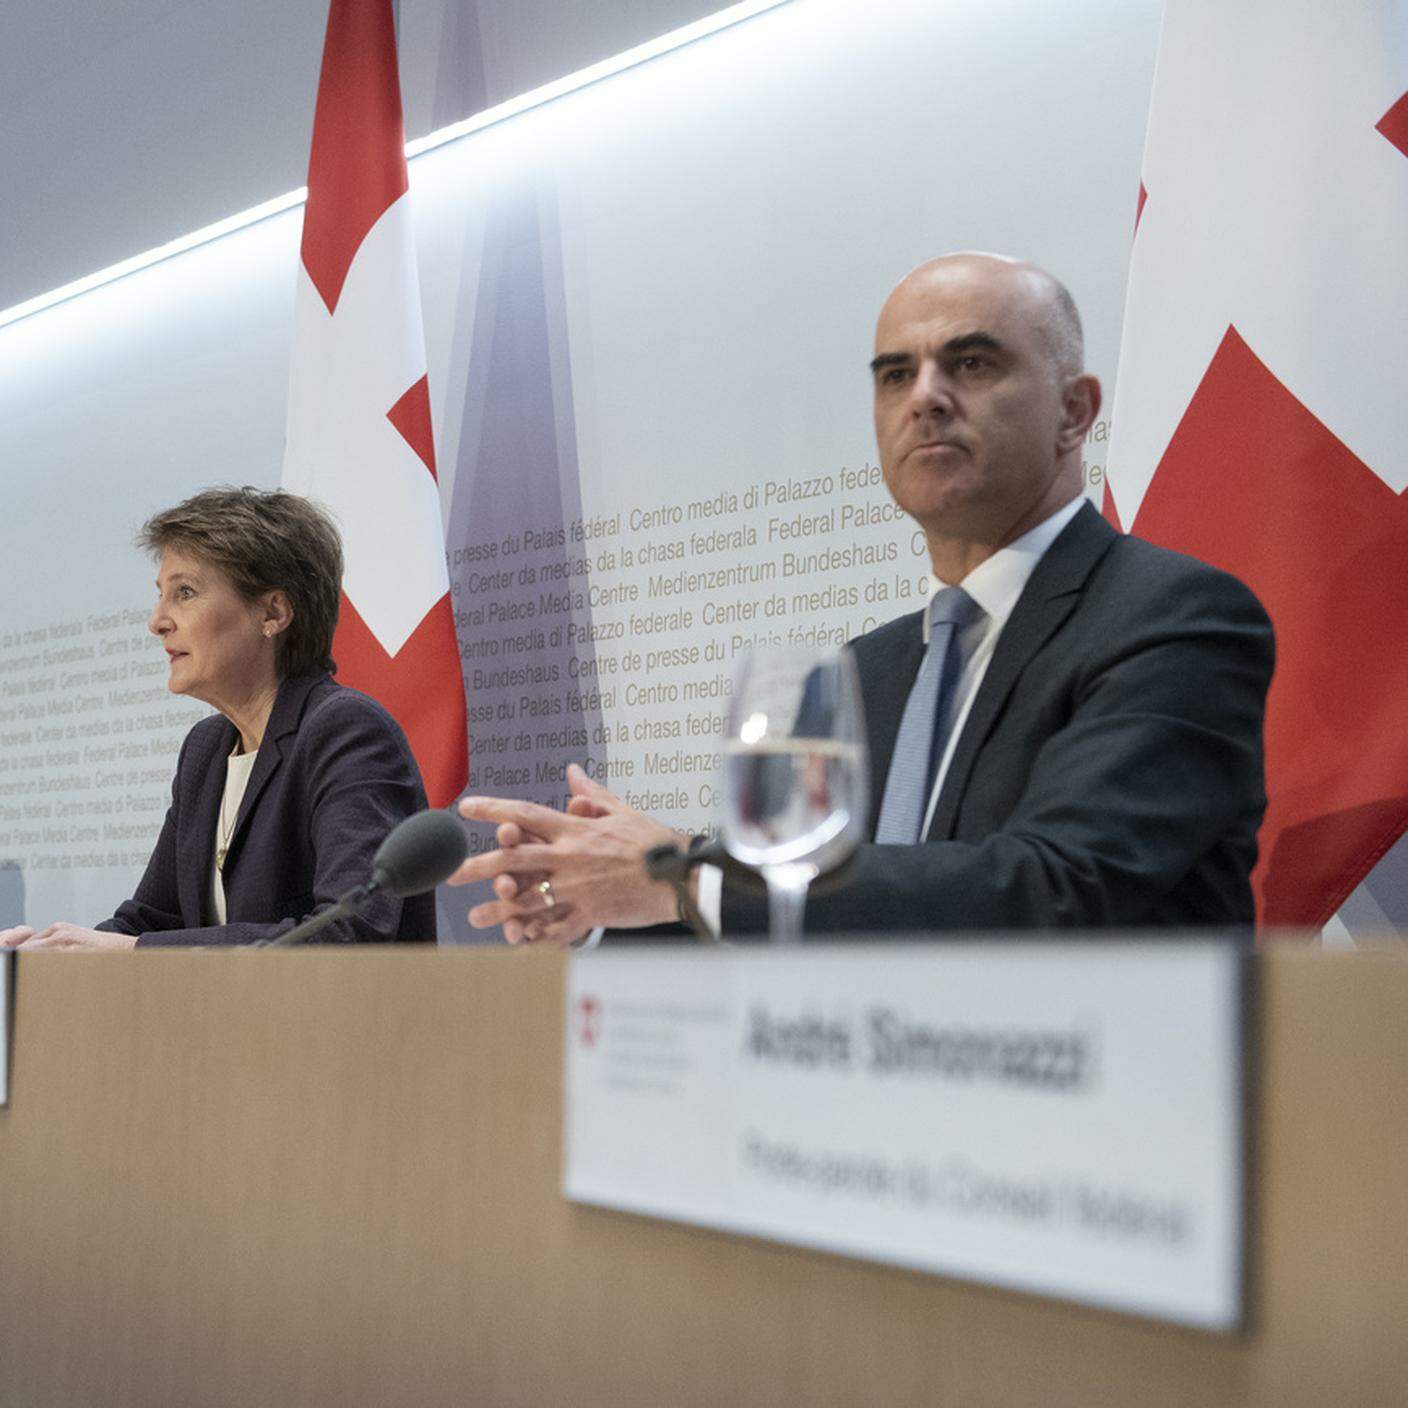 Il Consiglio federale parla agli svizzeri